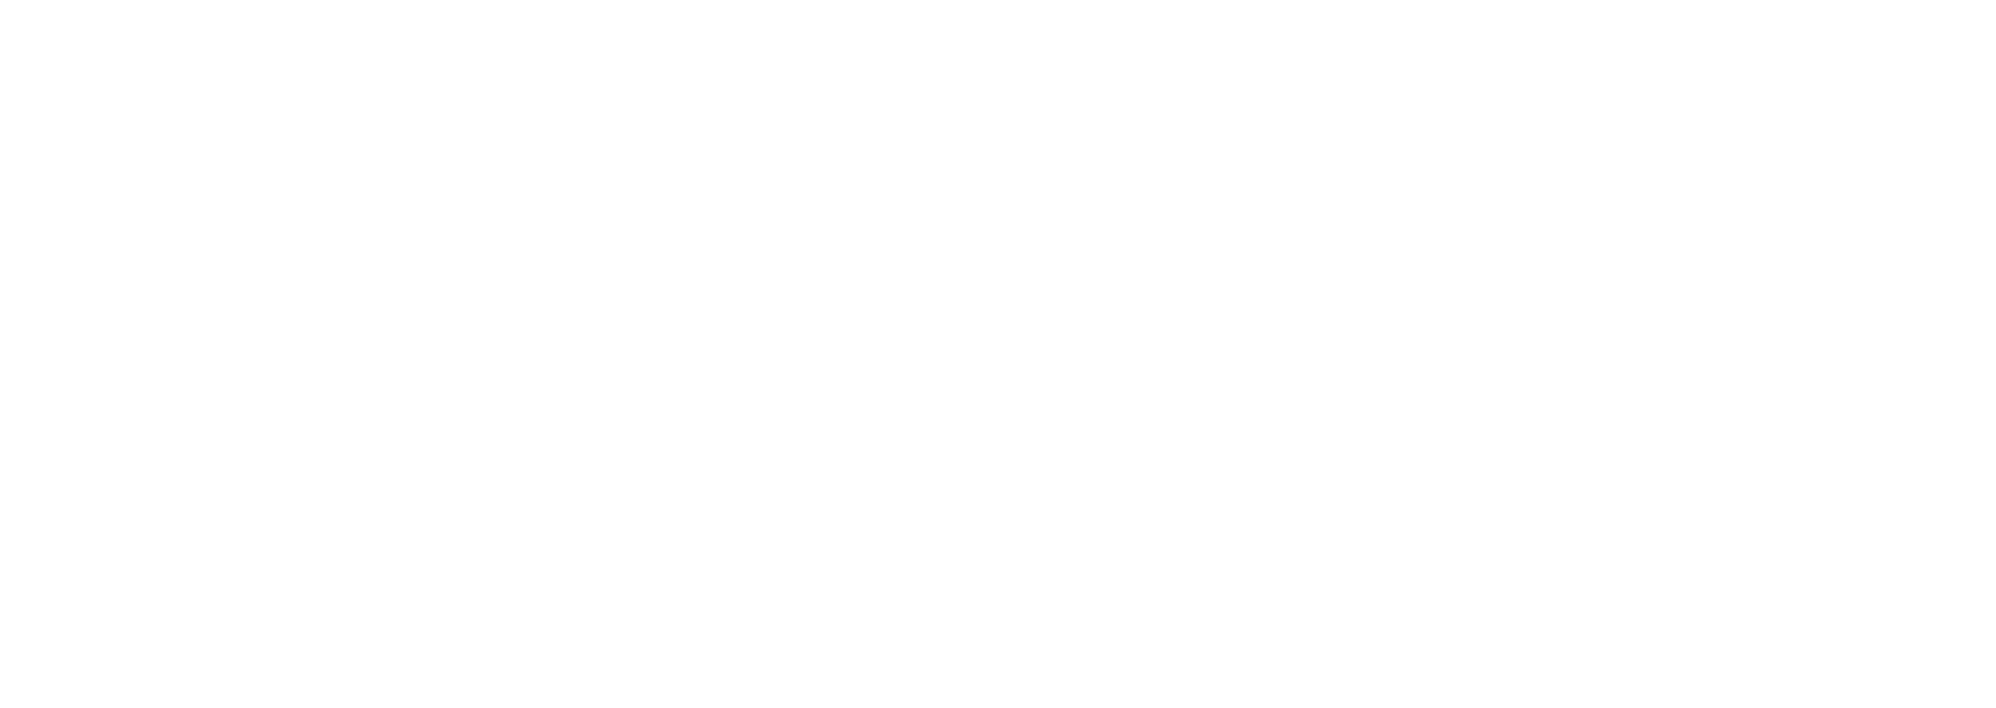 Webline Africa Limited